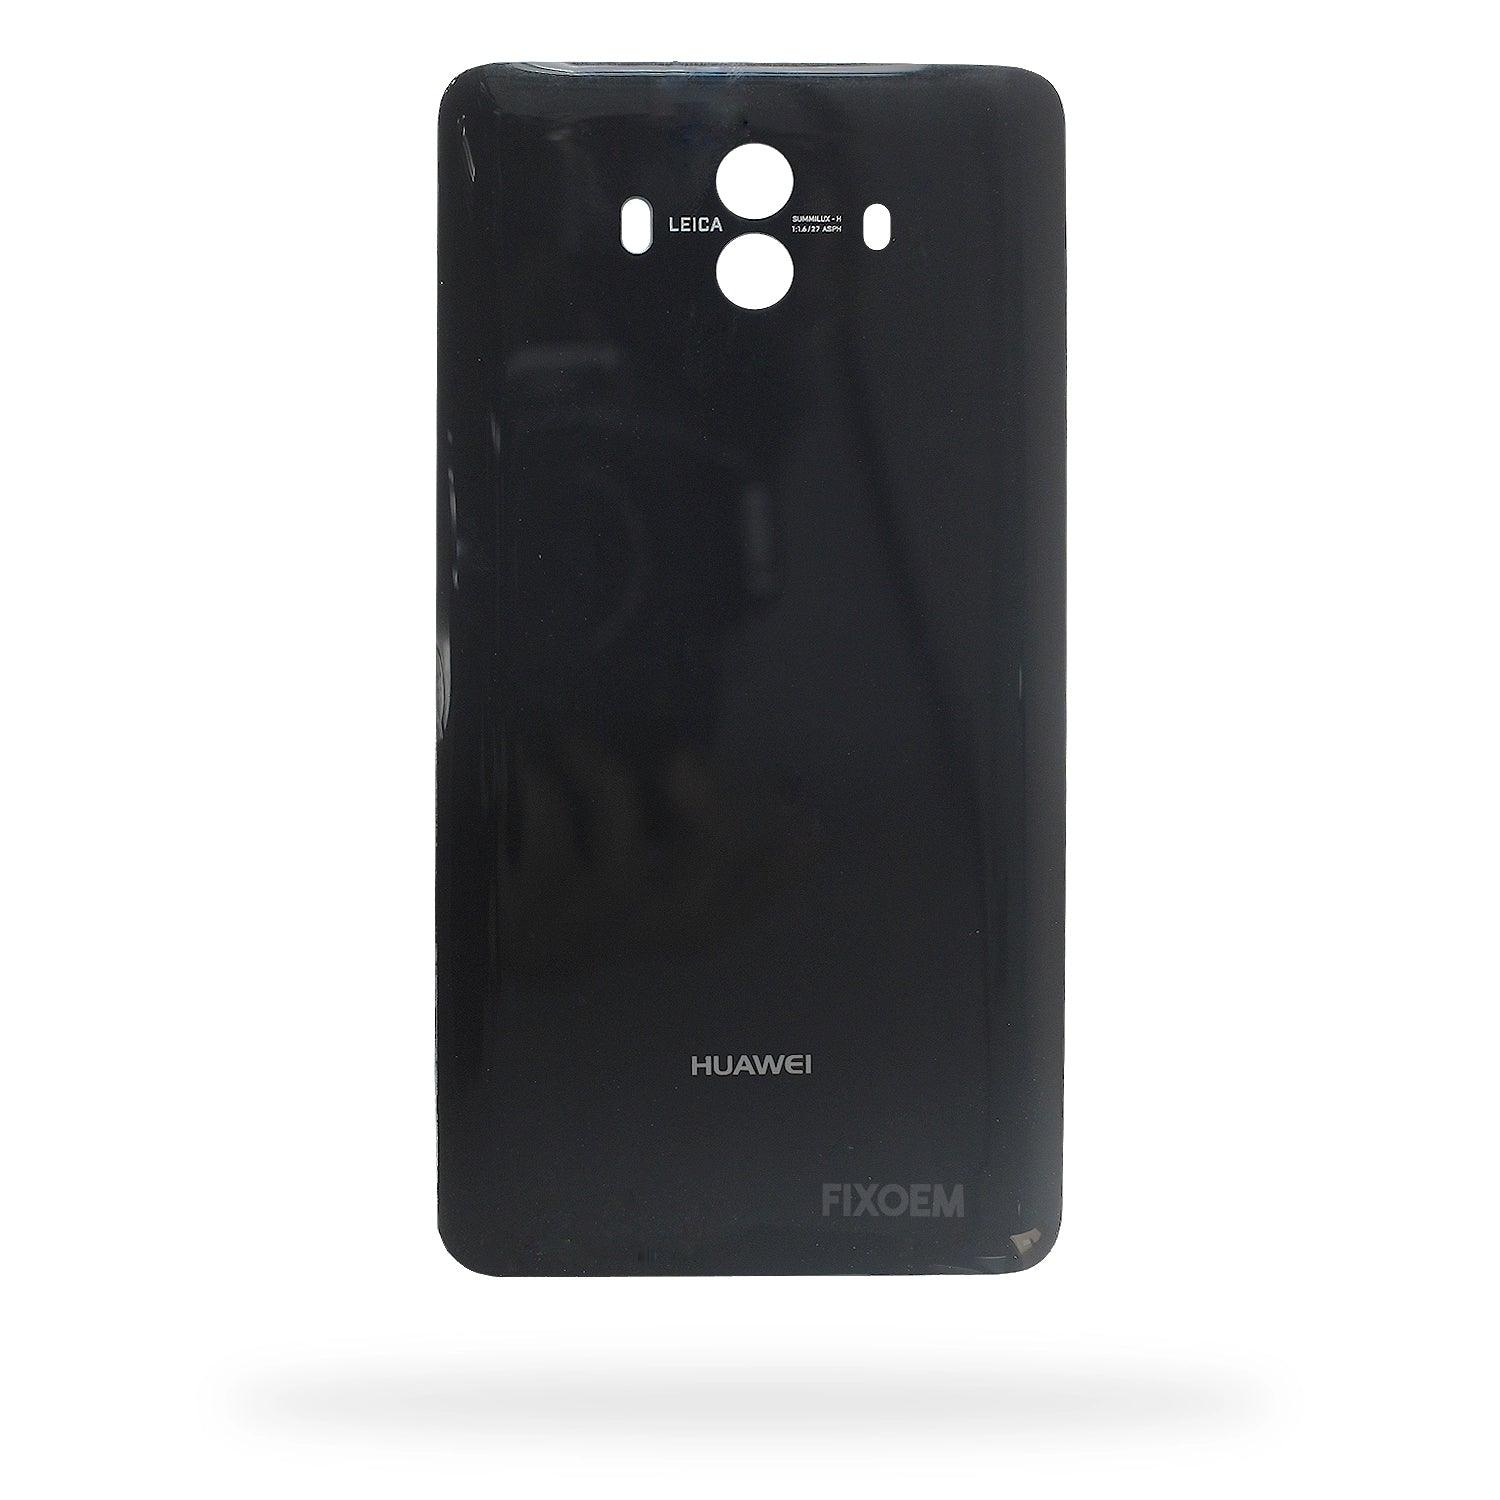 Tapa Trasera Huawei Mate 10 Alp-L09 a solo $ 90.00 Refaccion y puestos celulares, refurbish y microelectronica.- FixOEM